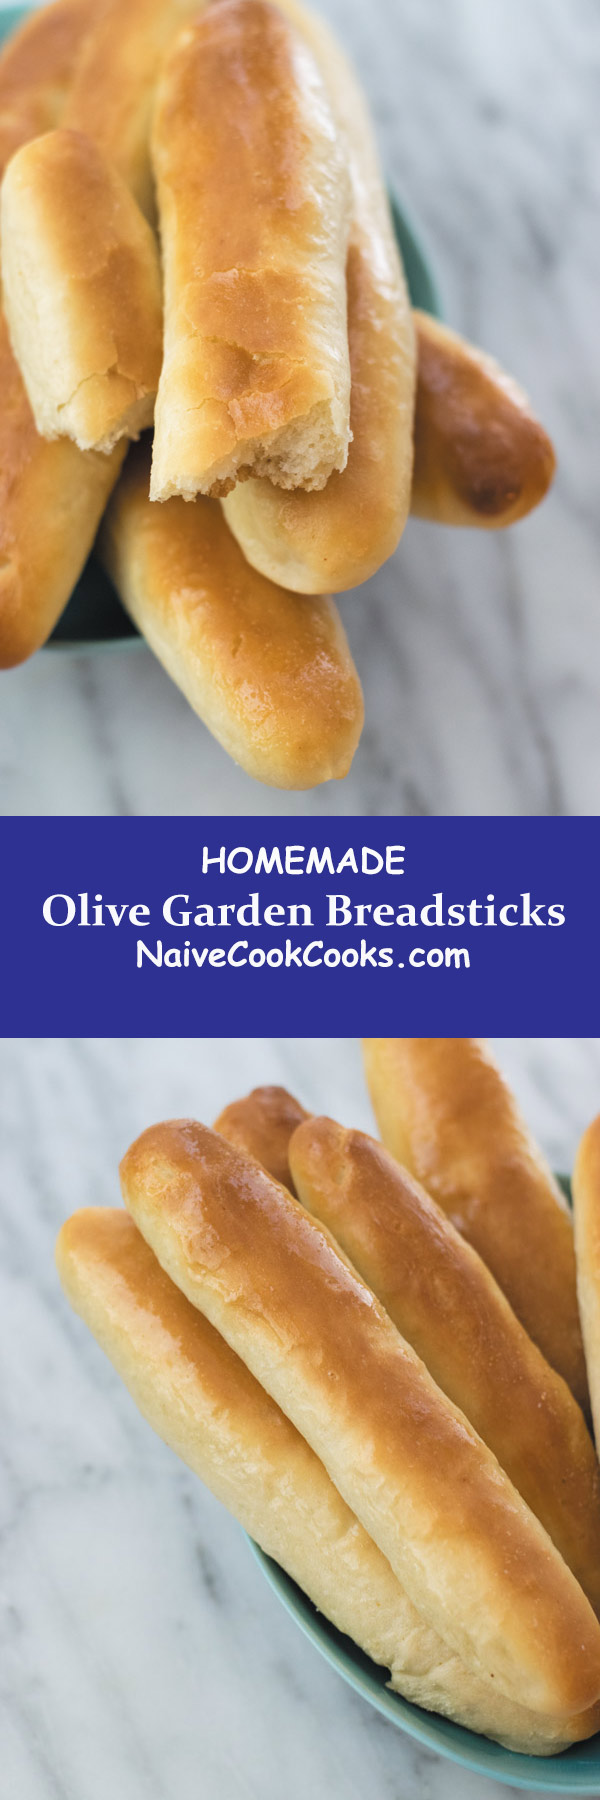 homemade olive garden breadsticks long pin